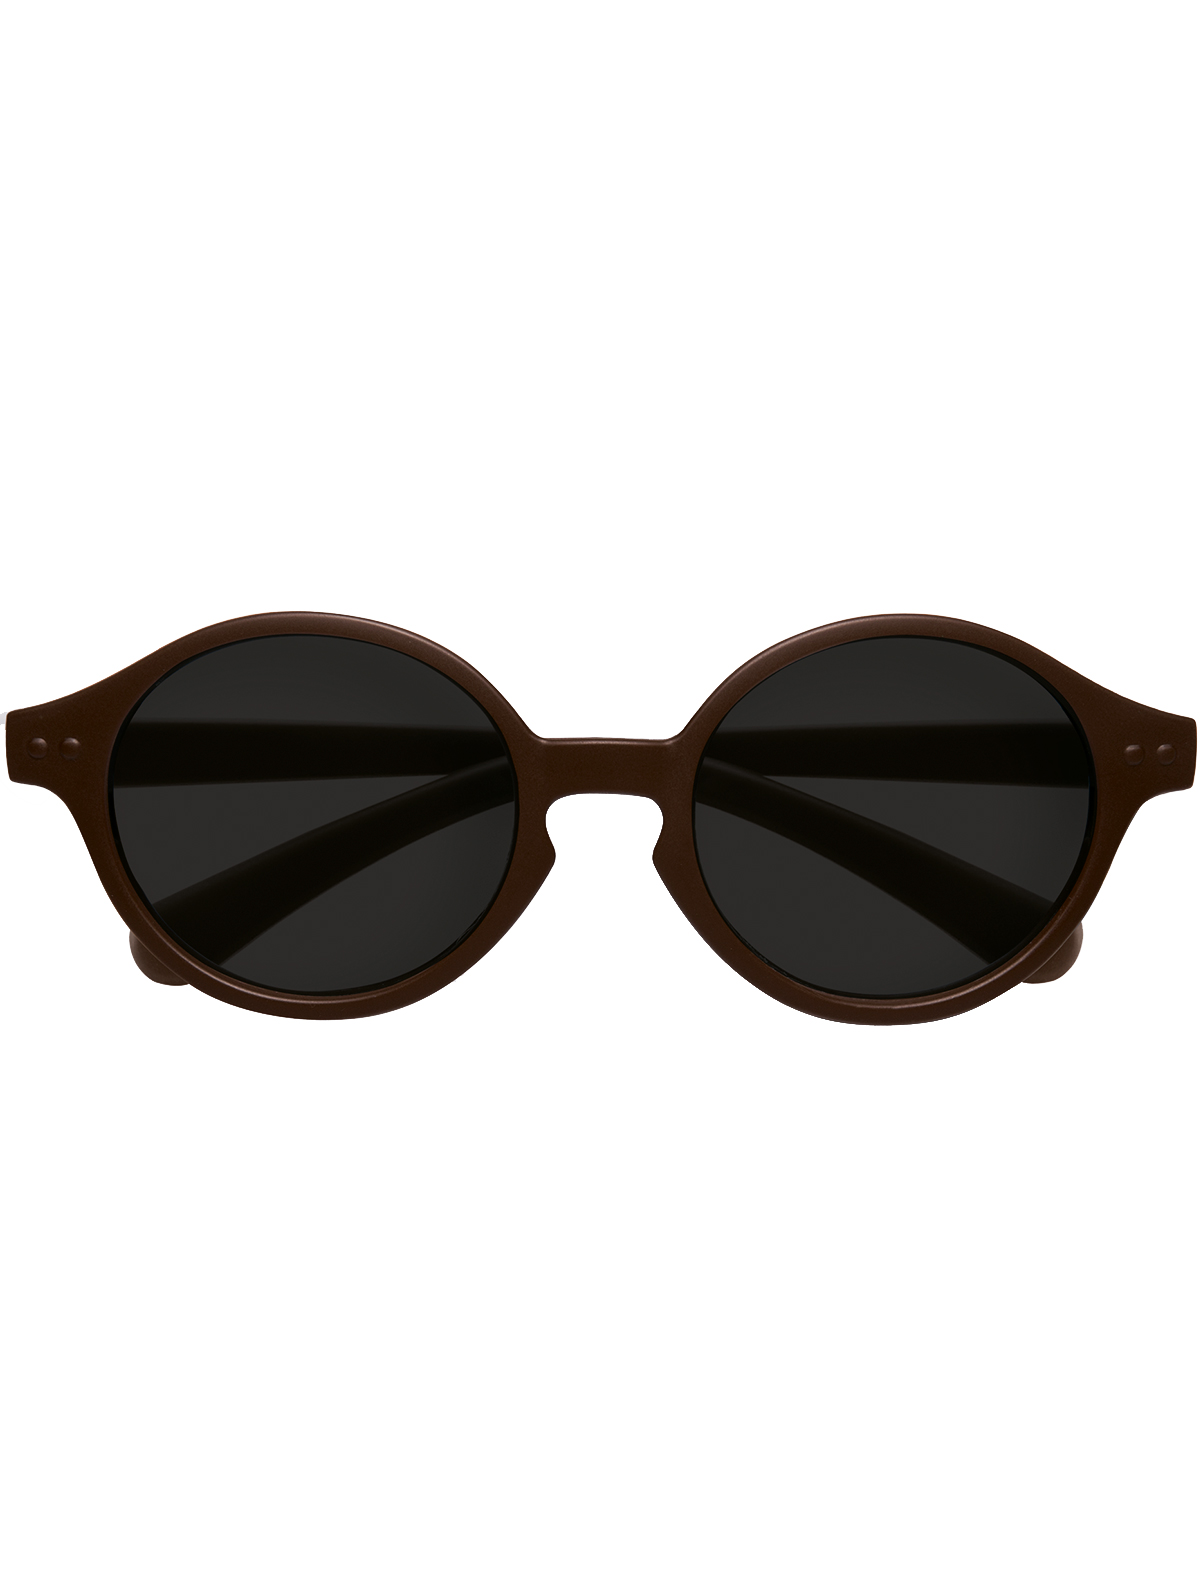 солнцезащитные очки izipizi малыши, коричневые